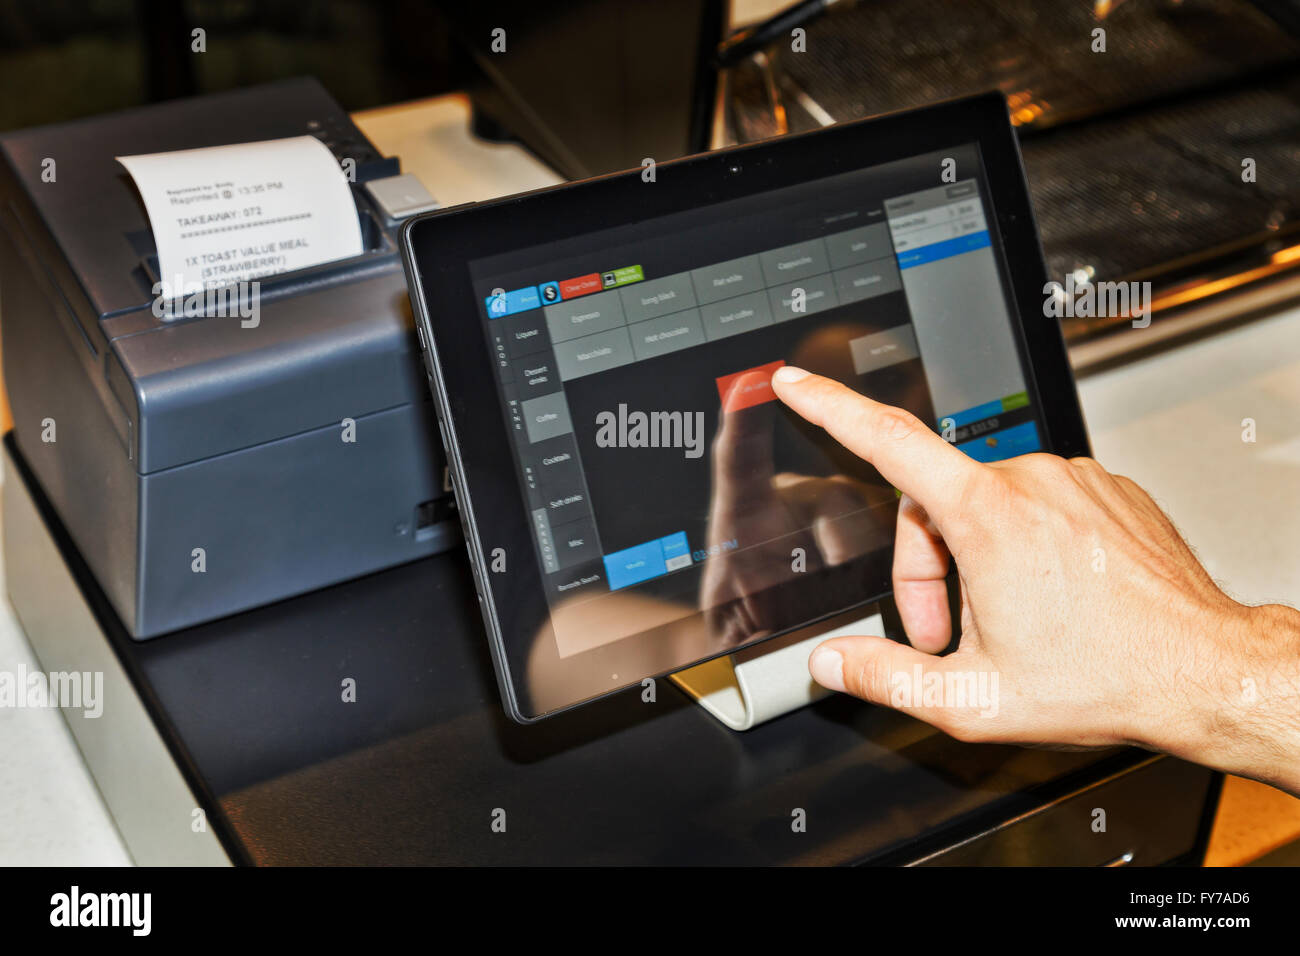 Terminale POS nella caffetteria caffè cameriere il canto quando servono i clienti e toccando lo schermo di un tablet con interfaccia software per prendere Foto Stock